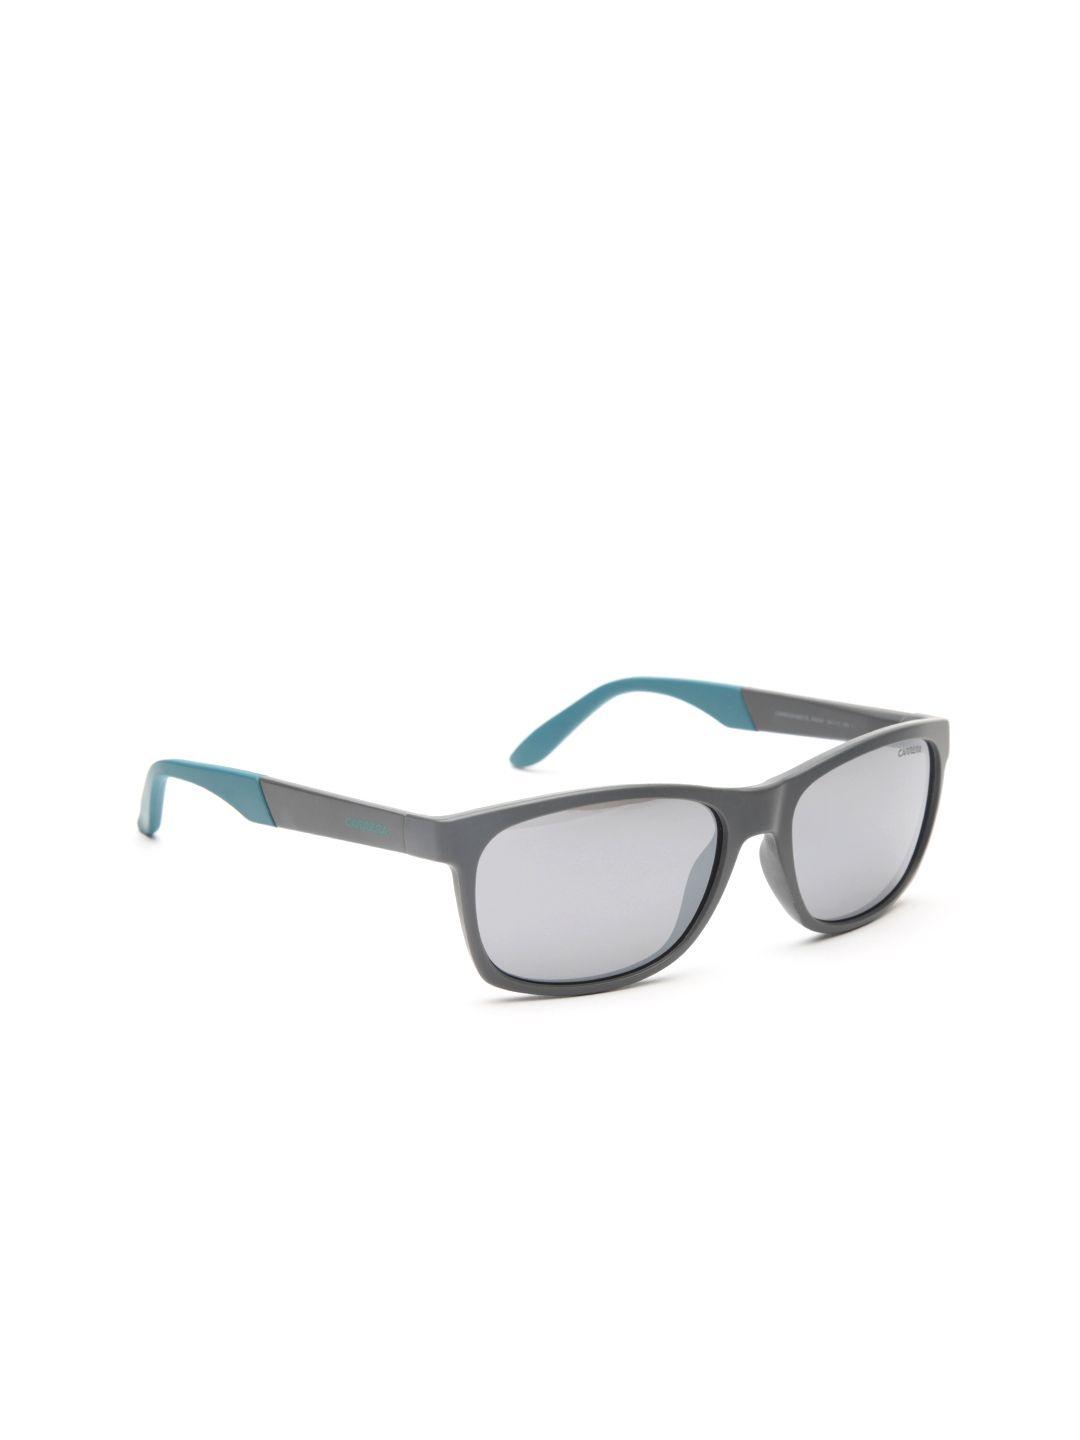 carrera unisex mirrored rectangle sunglasses 8021/s riw 56sf